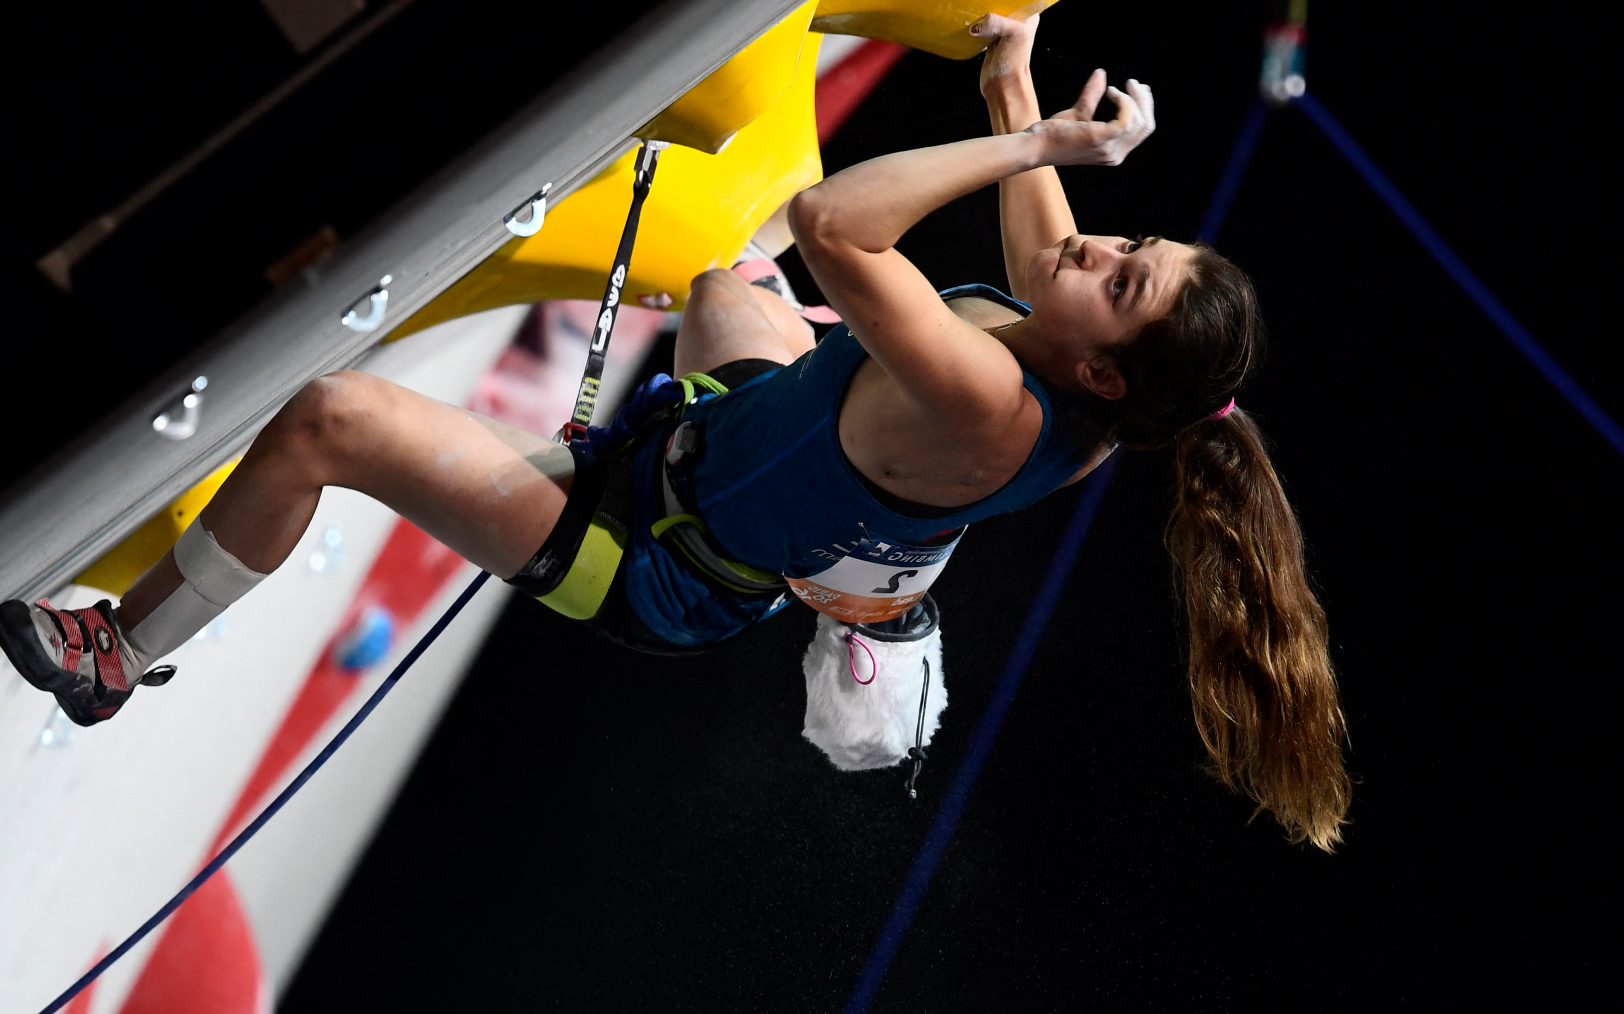 La Française Hélène Janicot participe à la demi-finale de l'épreuve féminine en tête des Championnats du monde d'escalade et de parachutisme en salle 2016 à l'Accor Hôtels Arena de Paris, le 16 septembre 2016. MIGUEL MEDINA/AFP